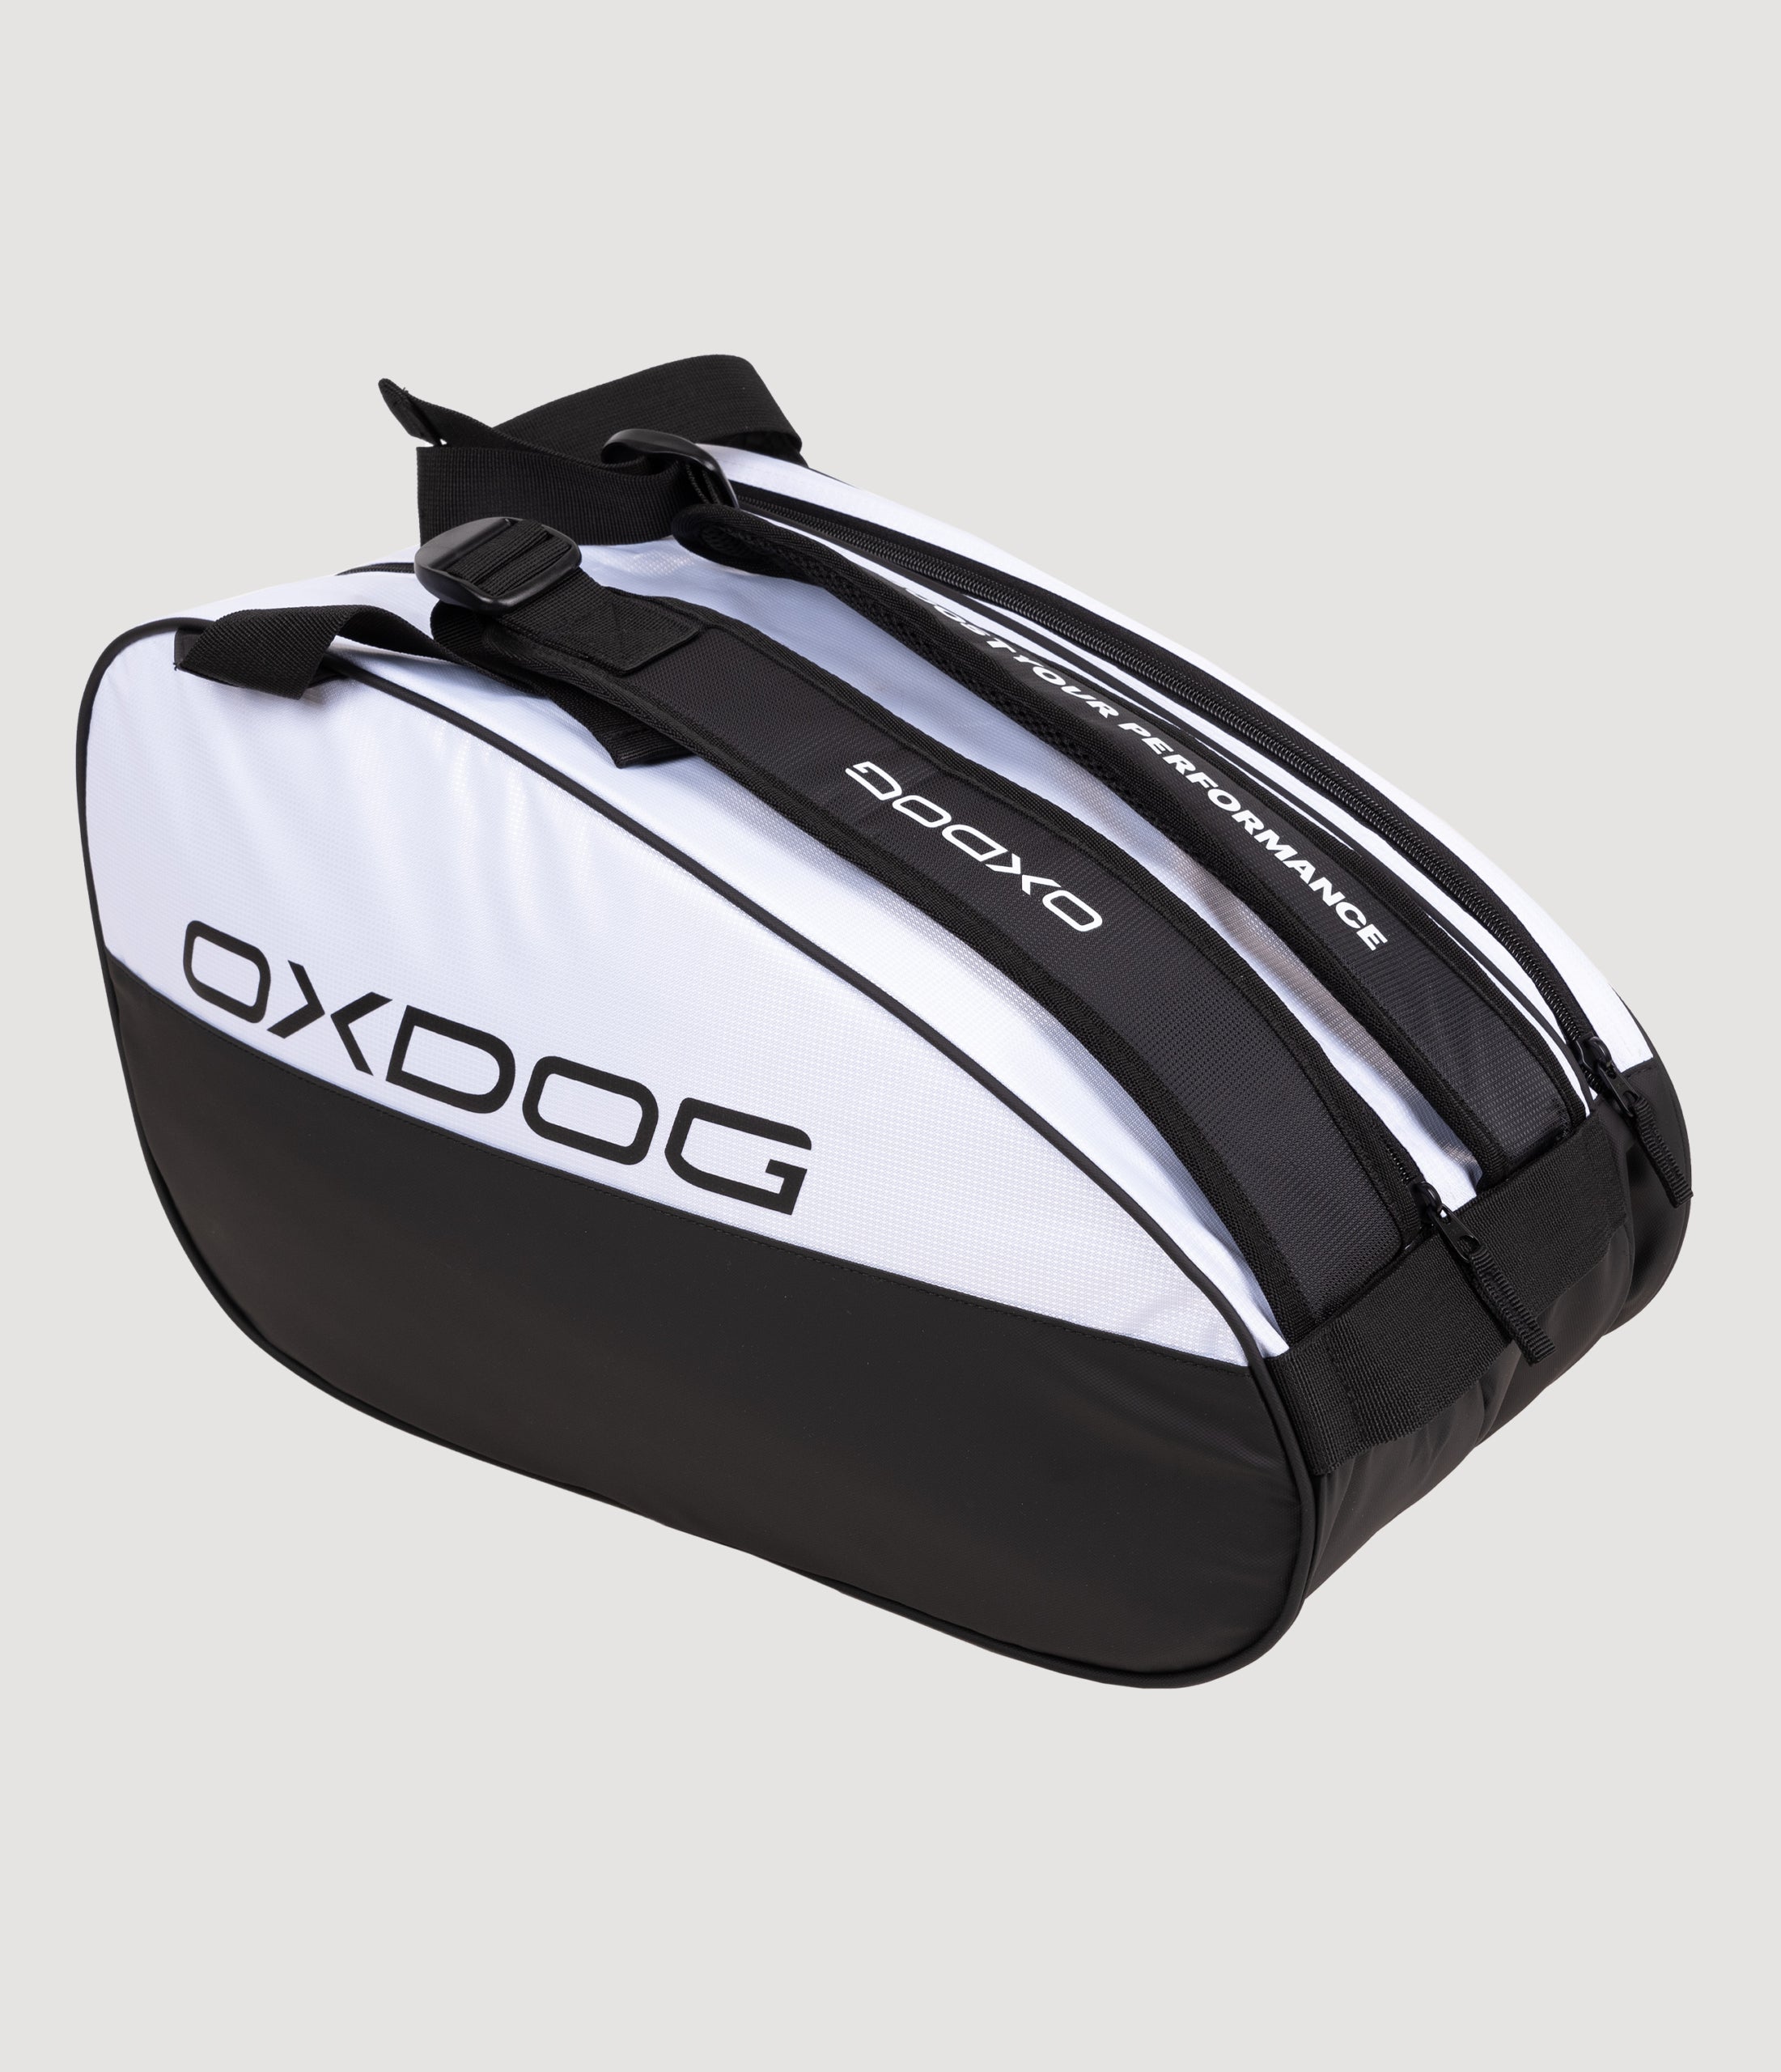 Oxdog Ultra Tour Padeltaske (Hvid/sort)